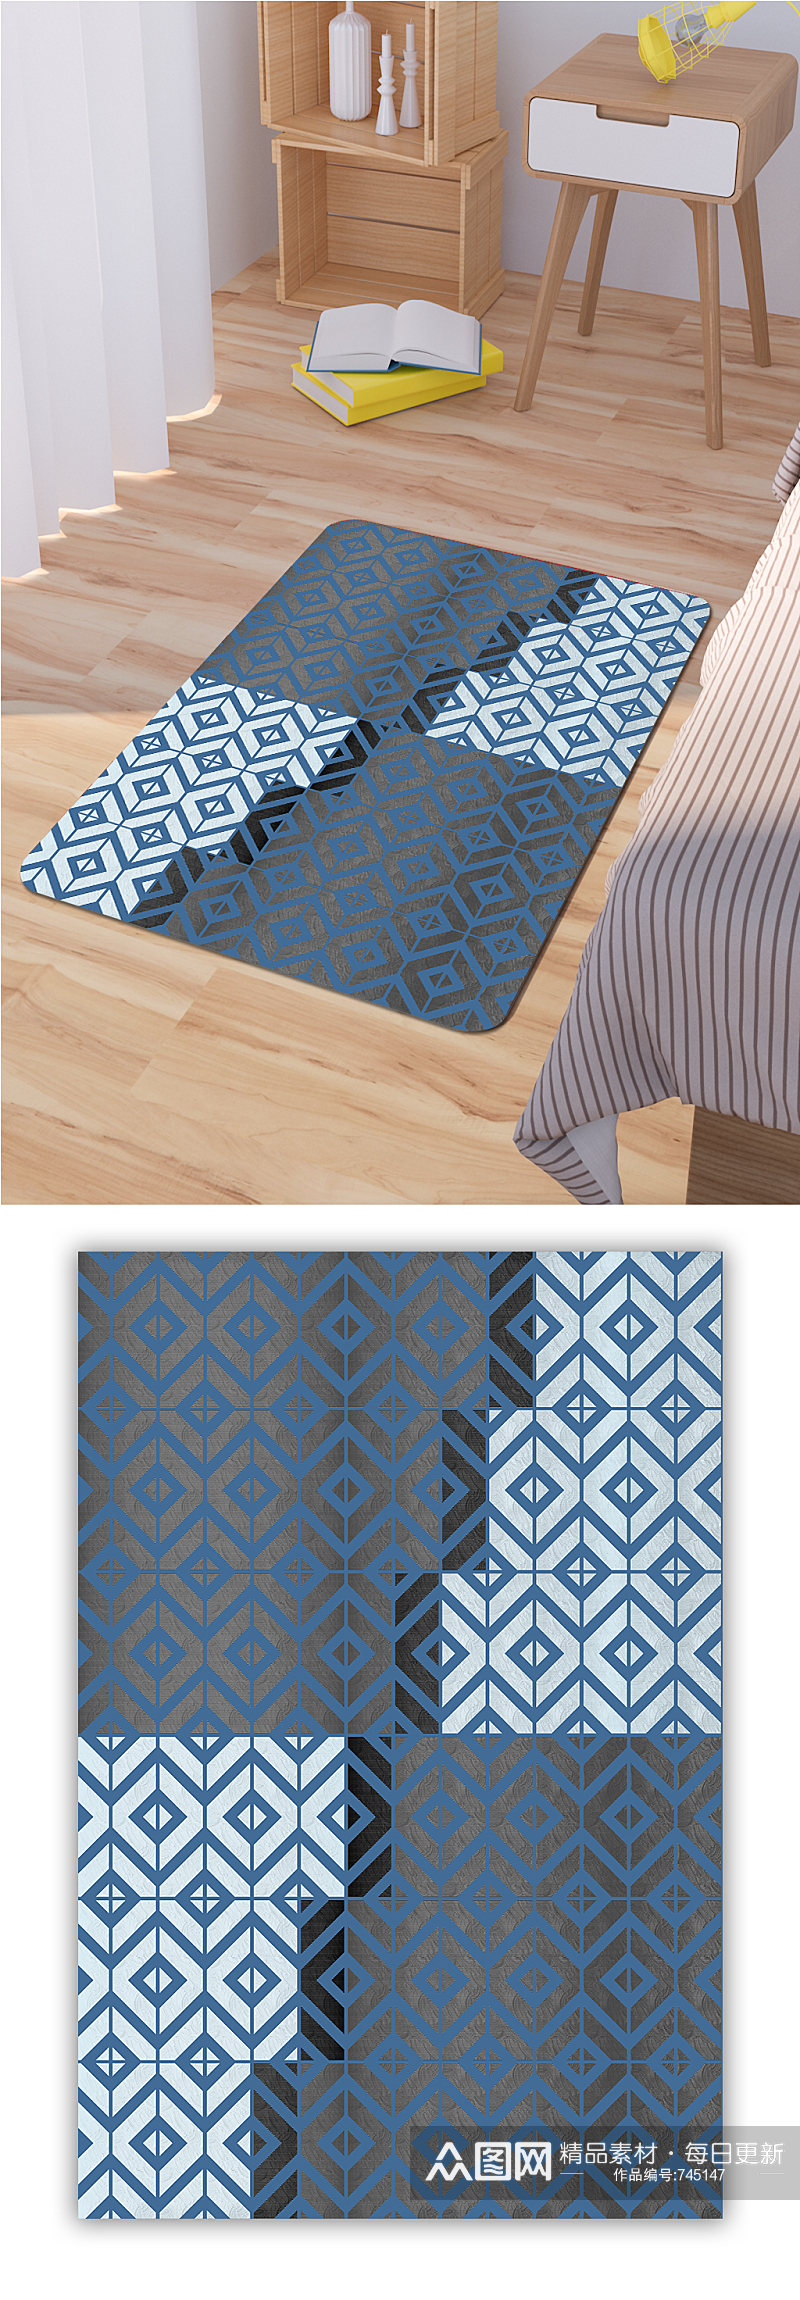 床边地毯厨房地毯素材